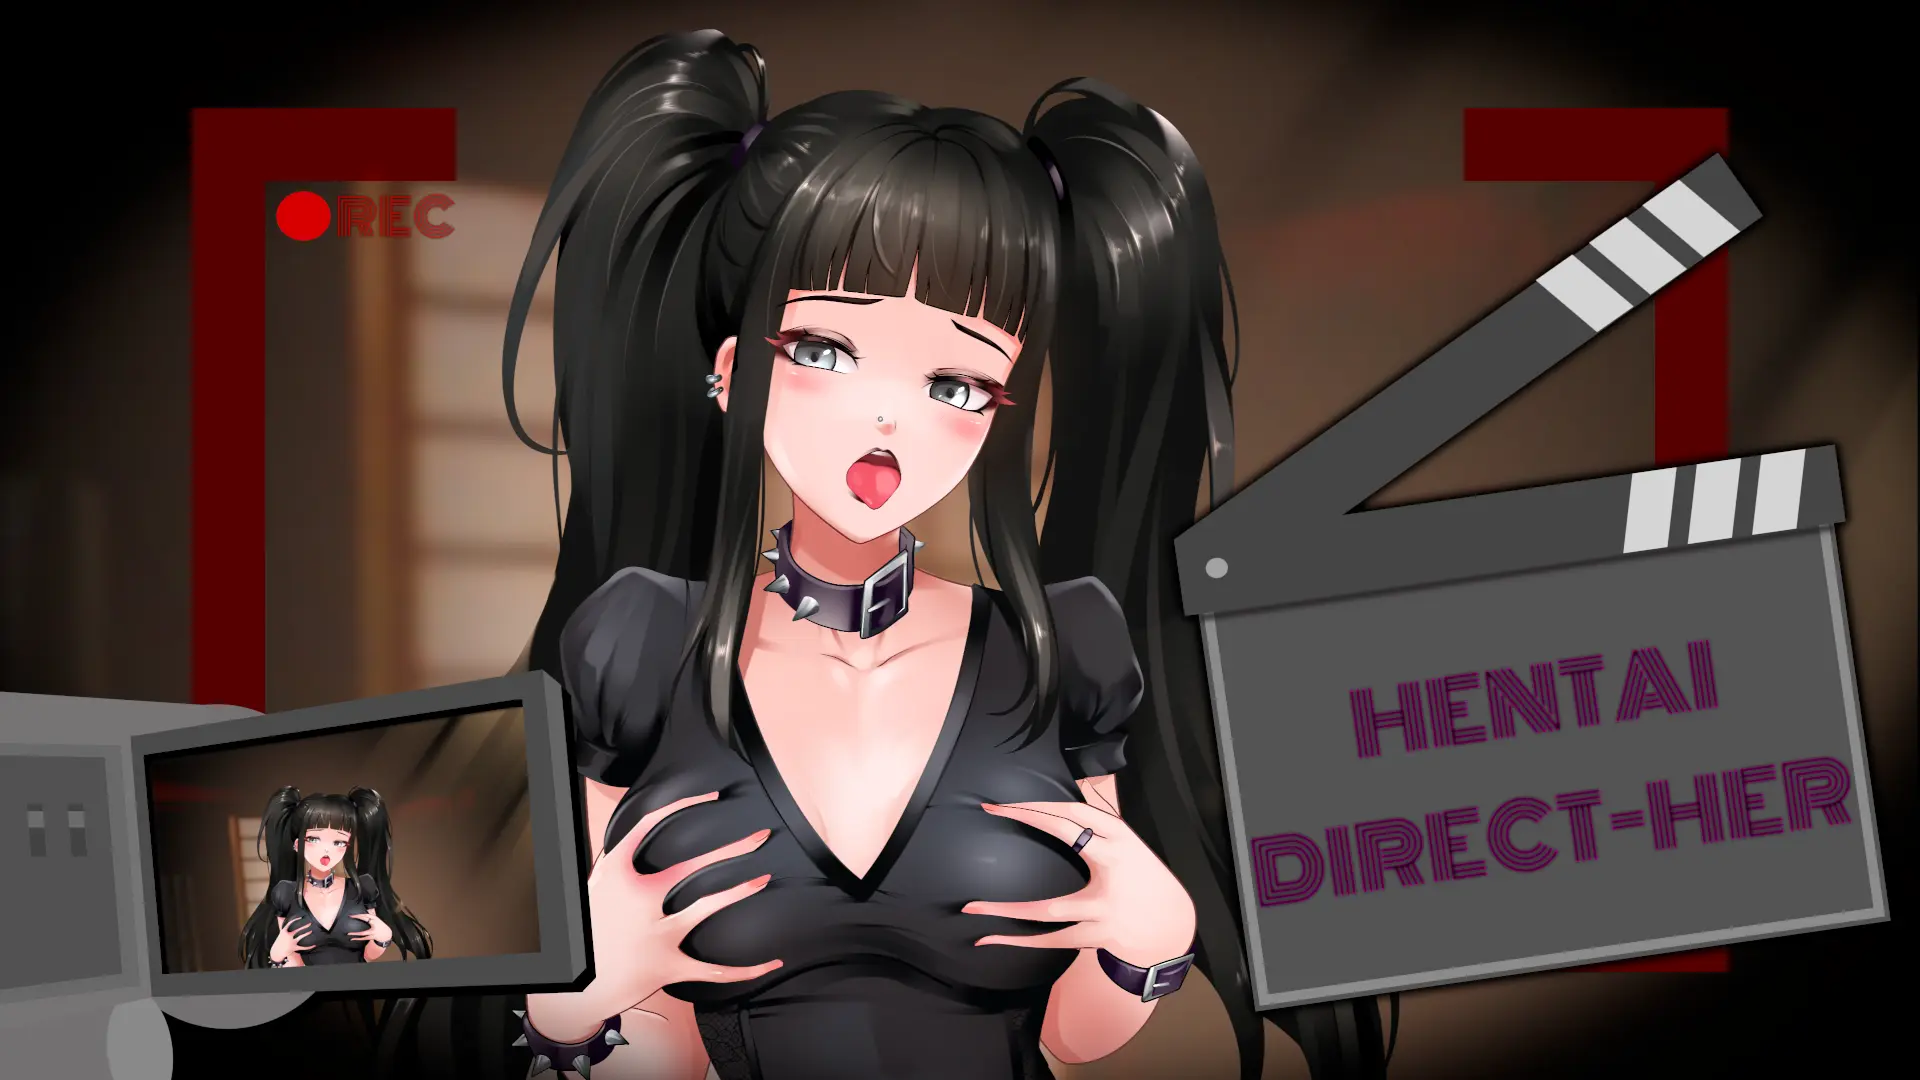 Hentai Direct-Her main image